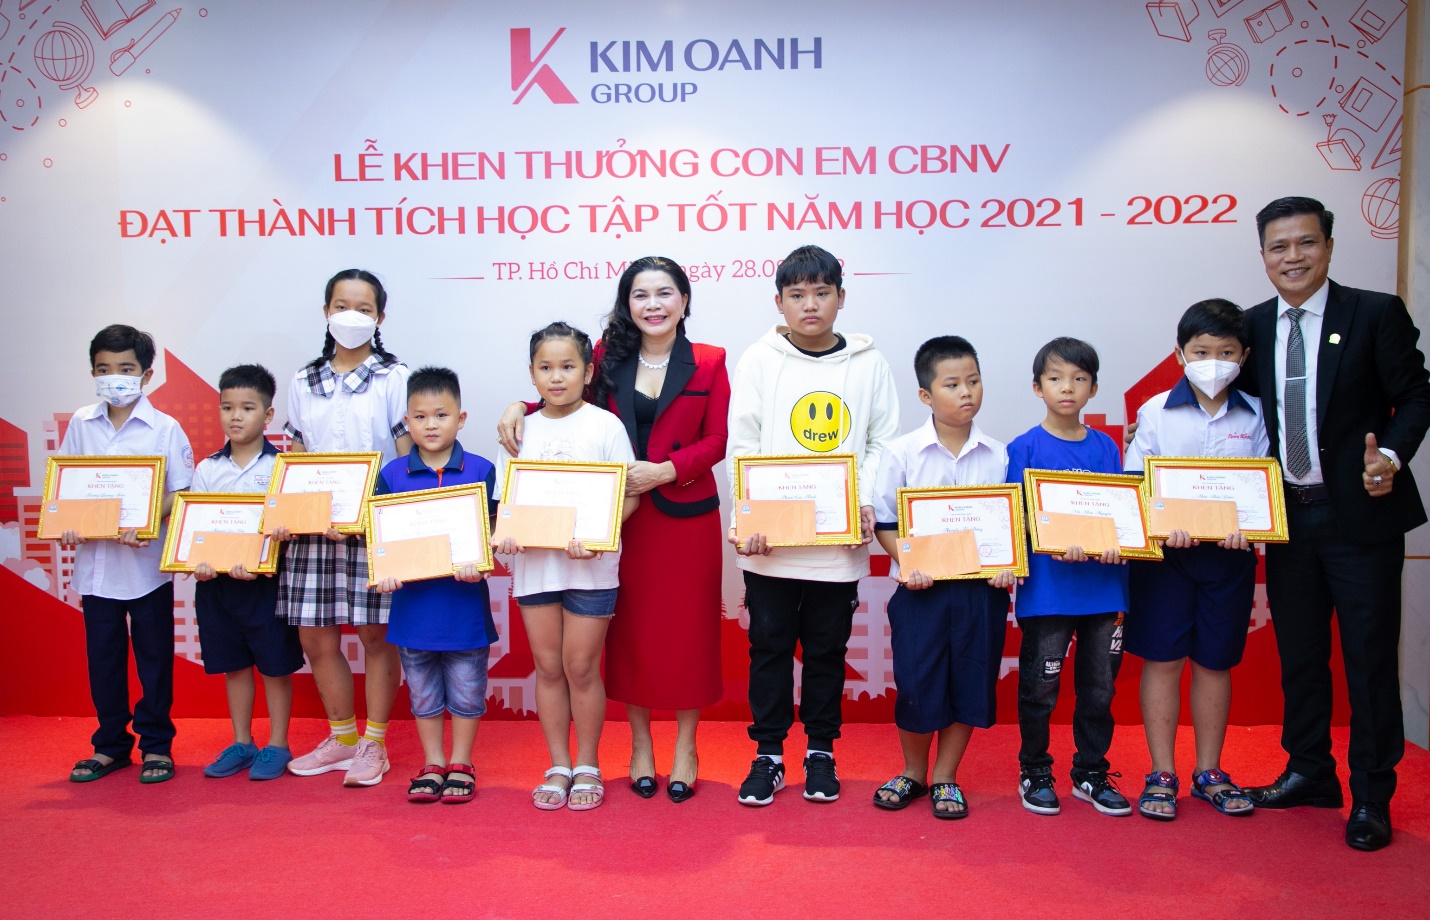 Lễ khen thưởng con em CBNV đạt thành tích học tập tốt năm học 2021-2022